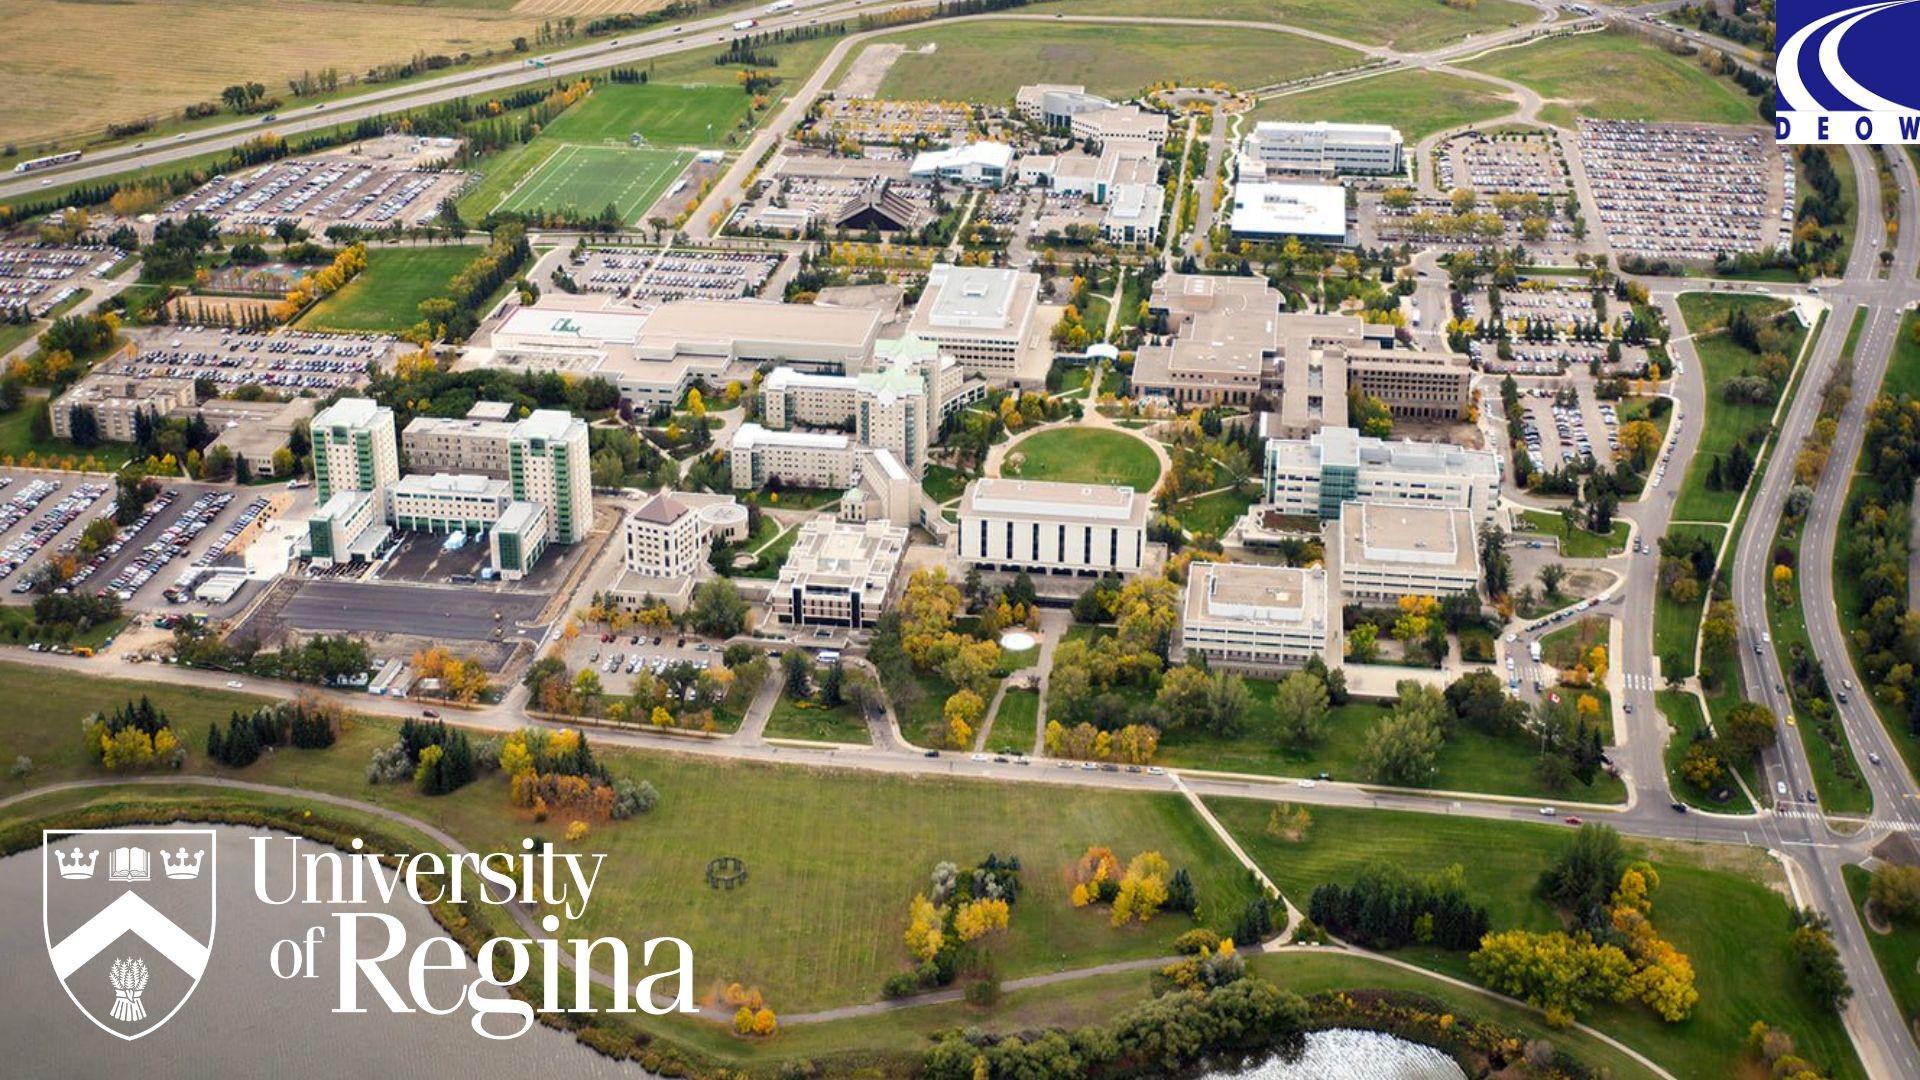 University of Regina - Ngôi trường với hơn 100 năm lịch sử tại Canada